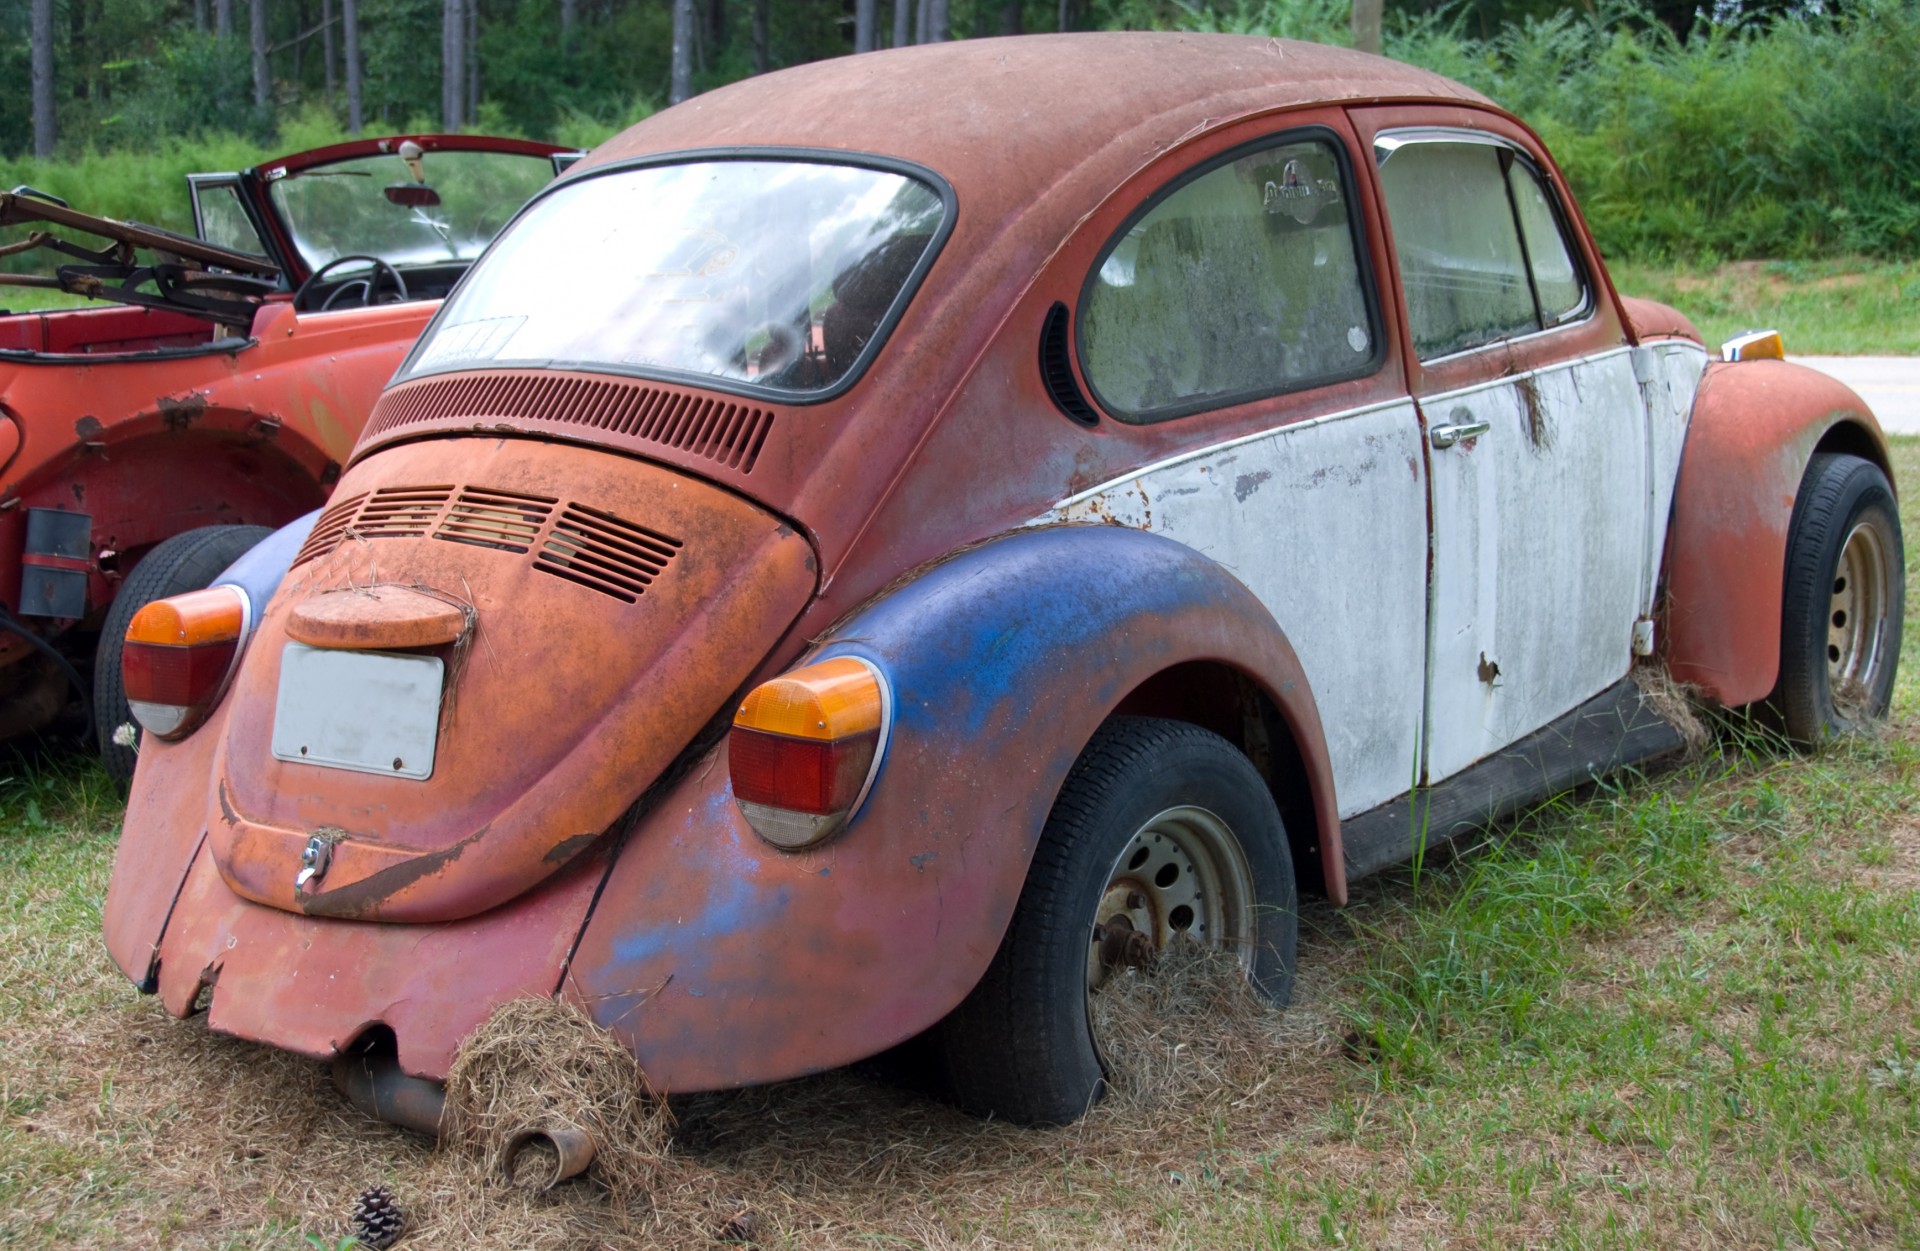 Old rustic Volkswagen junked